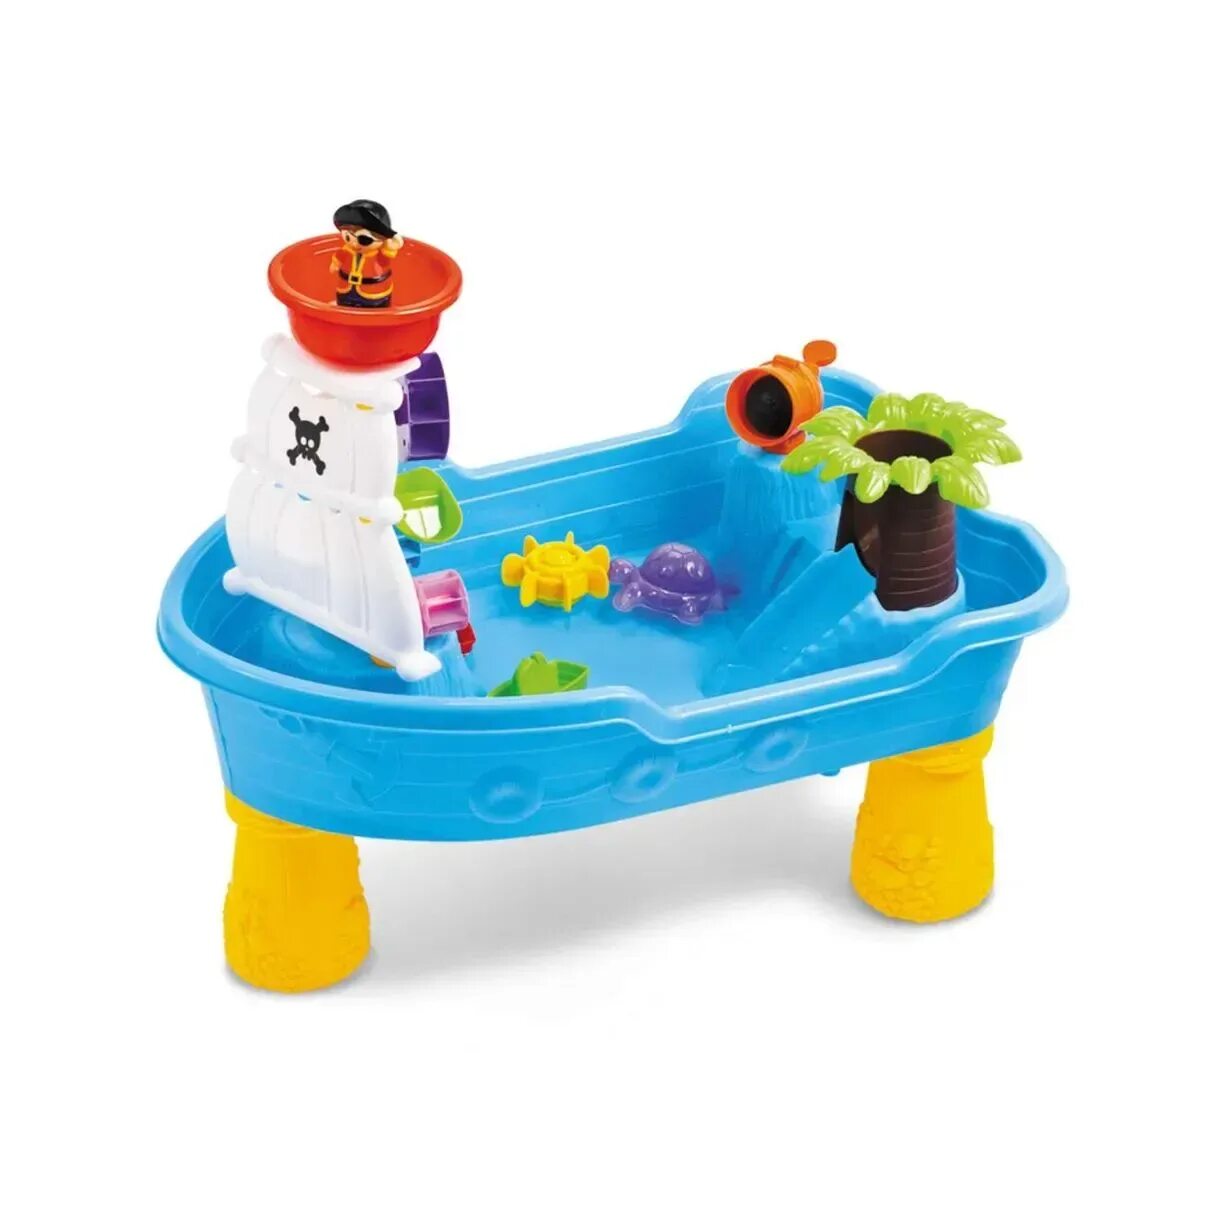 Стол для игры с песком и водой. Песочница-столик Hualian Toys аквапарк. Набор пиратский корабль н82926. Toy target песочница. Столик игровой «корабль», для песка и воды.